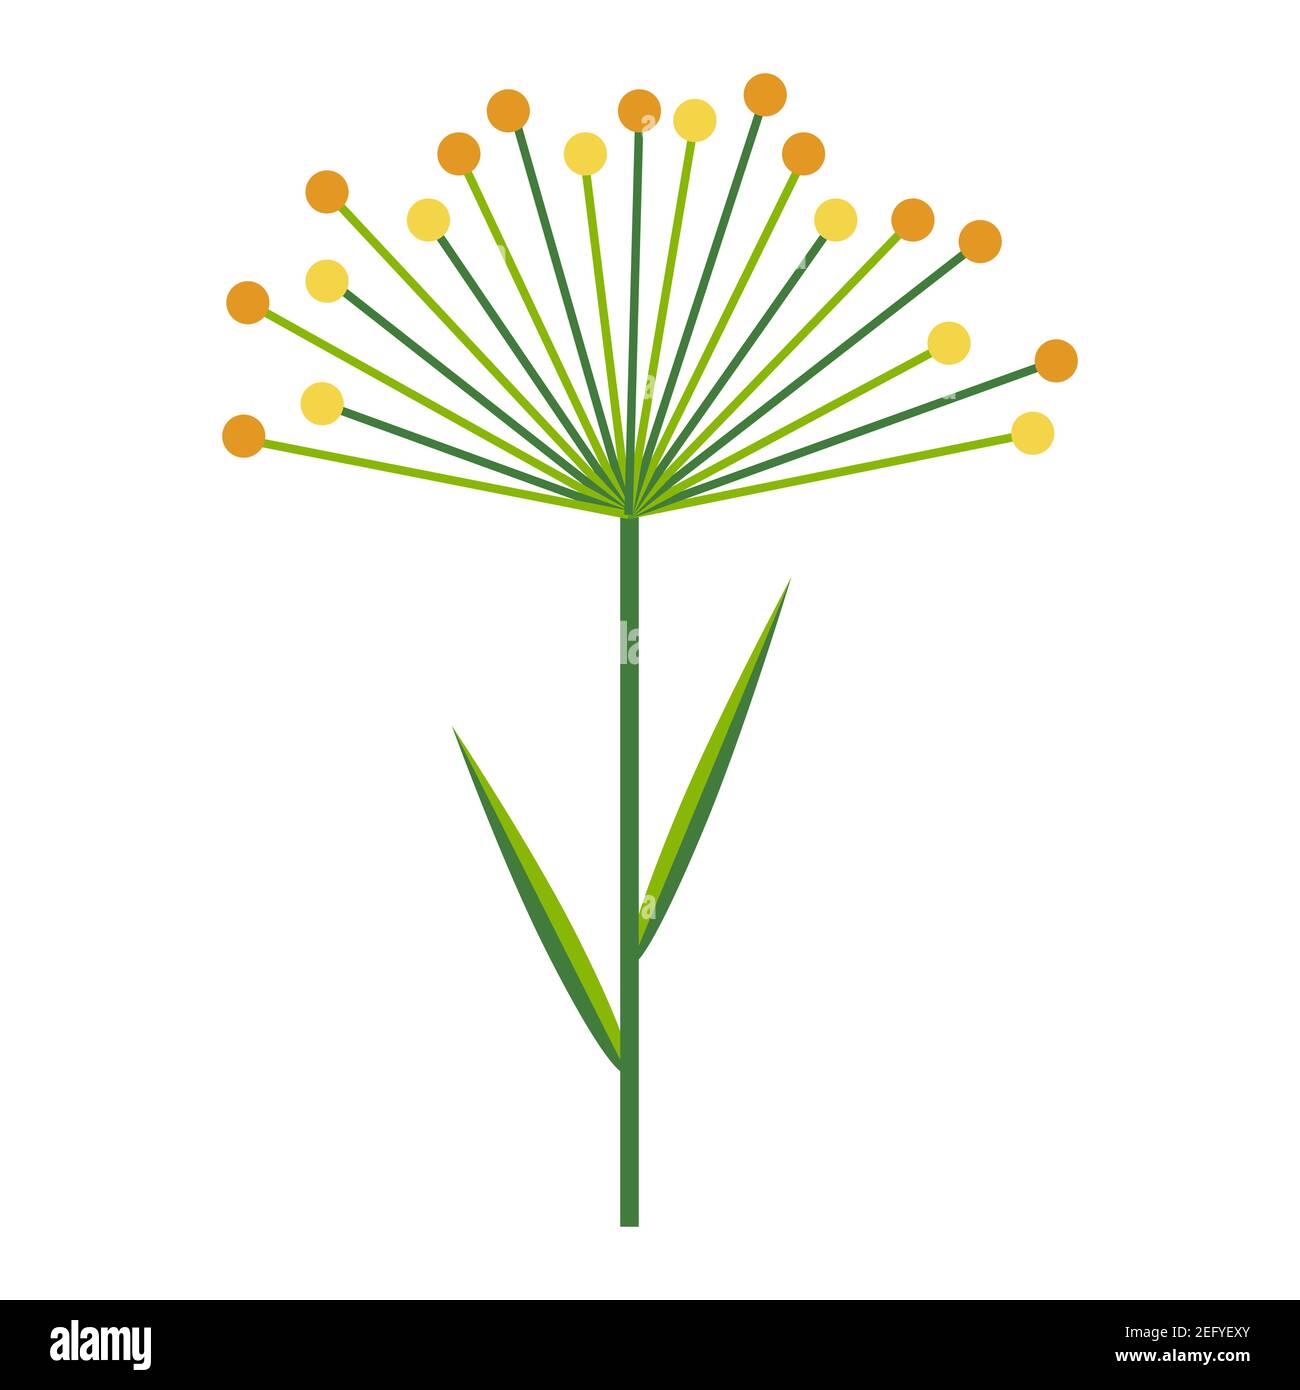 Parapluie d'aneth ou de plante de céréales. Branche simple minimaliste vert vif avec feuilles et fleurs jaunes. Collection nature de plantes colorées pour la mer Illustration de Vecteur